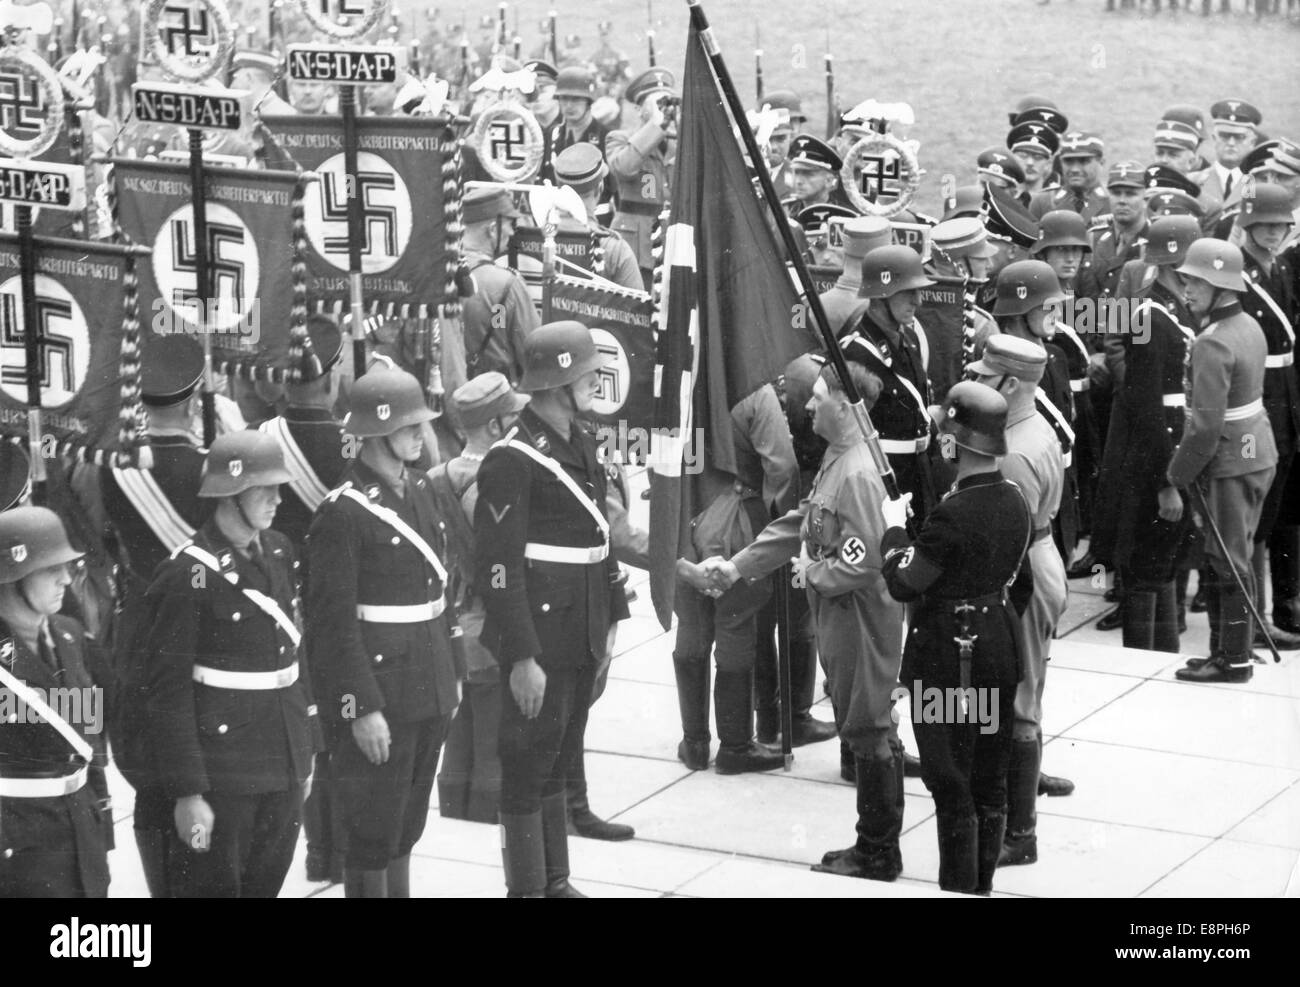 Nürnberger Rallye 1937 in Nürnberg - Konsecration neuer Standards mit der "Blutflagge" durch Adolf Hitler während des Appells der Sturmabteilung (SA), Schutzstaffel (SS), des Nationalen Sozialistischen Kfz-Korps (NSKK) und des Nationalen Sozialistischen Flyerkorps (NSFK) in Puitpoldarena auf dem Nazi-Parteigelände. Neue Standards von SA und SS wurden "geweiht", indem sie mit der "Blutflagge" verbunden wurden, die angeblich in der gescheiterten Bierhalle Putsch getragen wurde. (Qualitätsmängel aufgrund der historischen Bildkopie) Fotoarchiv für Zeitgeschichtee - KEIN KABELDIENST - Stockfoto